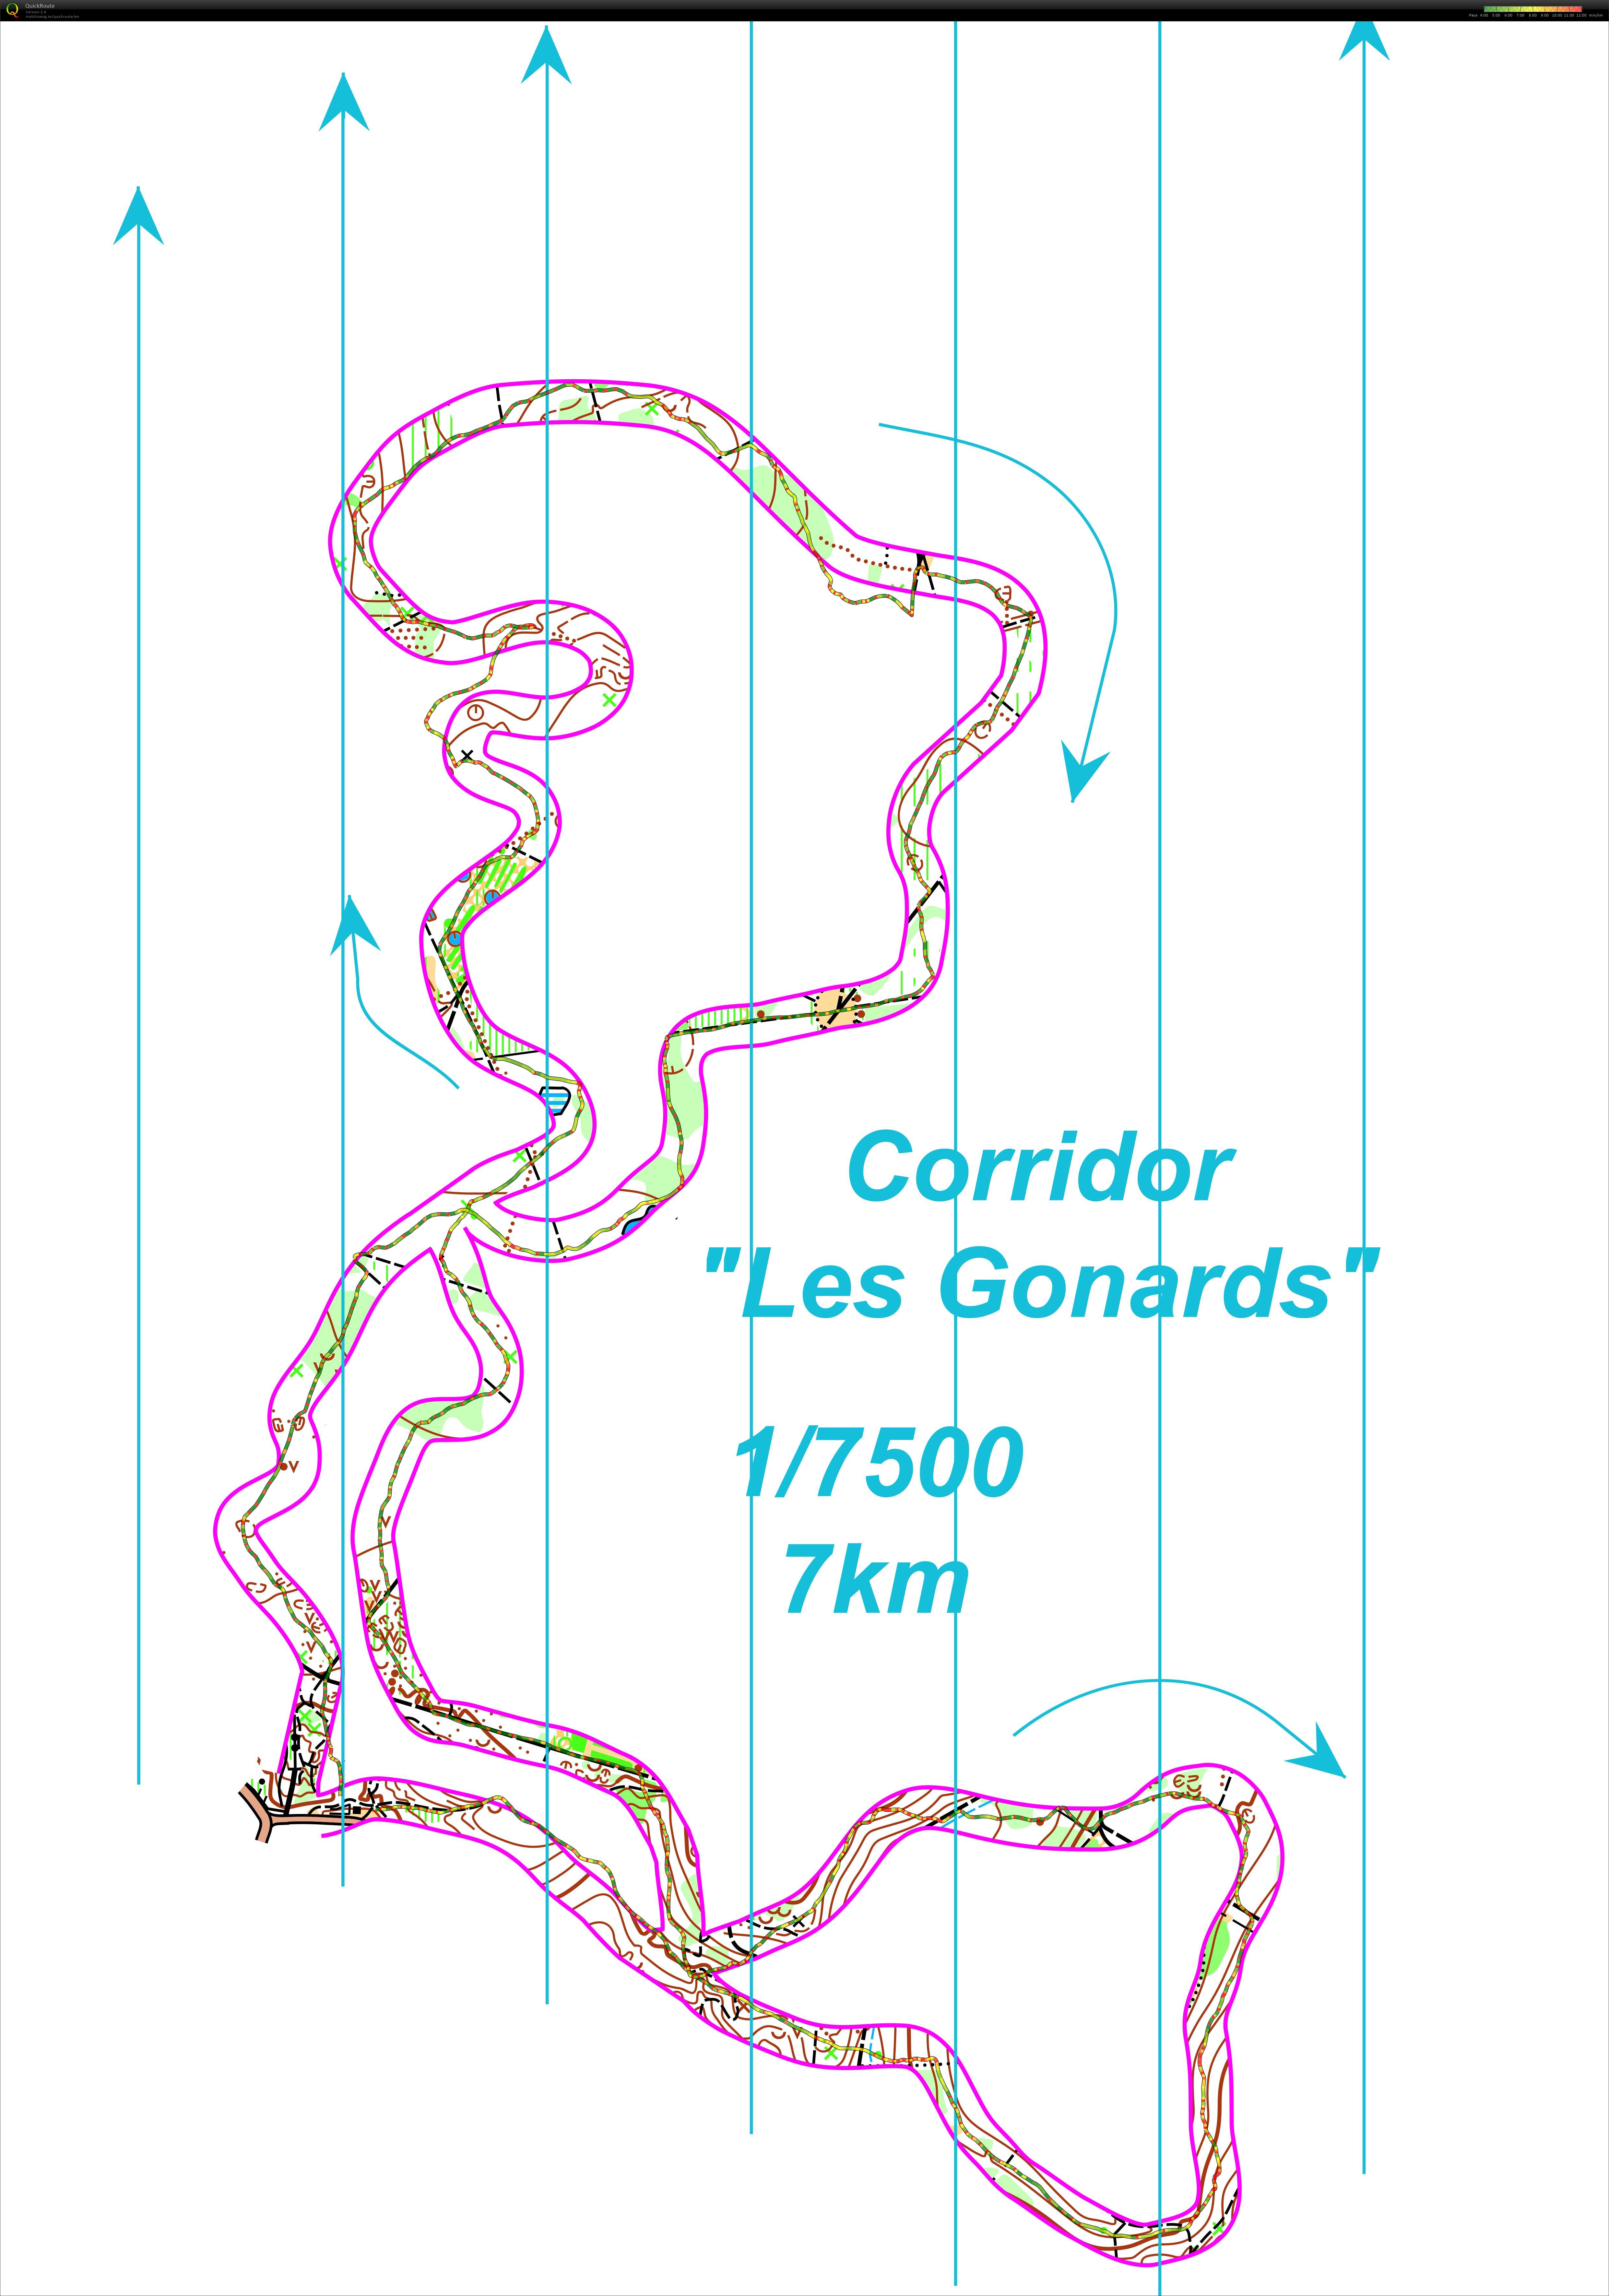 Corridor gonards  (2017-11-29)